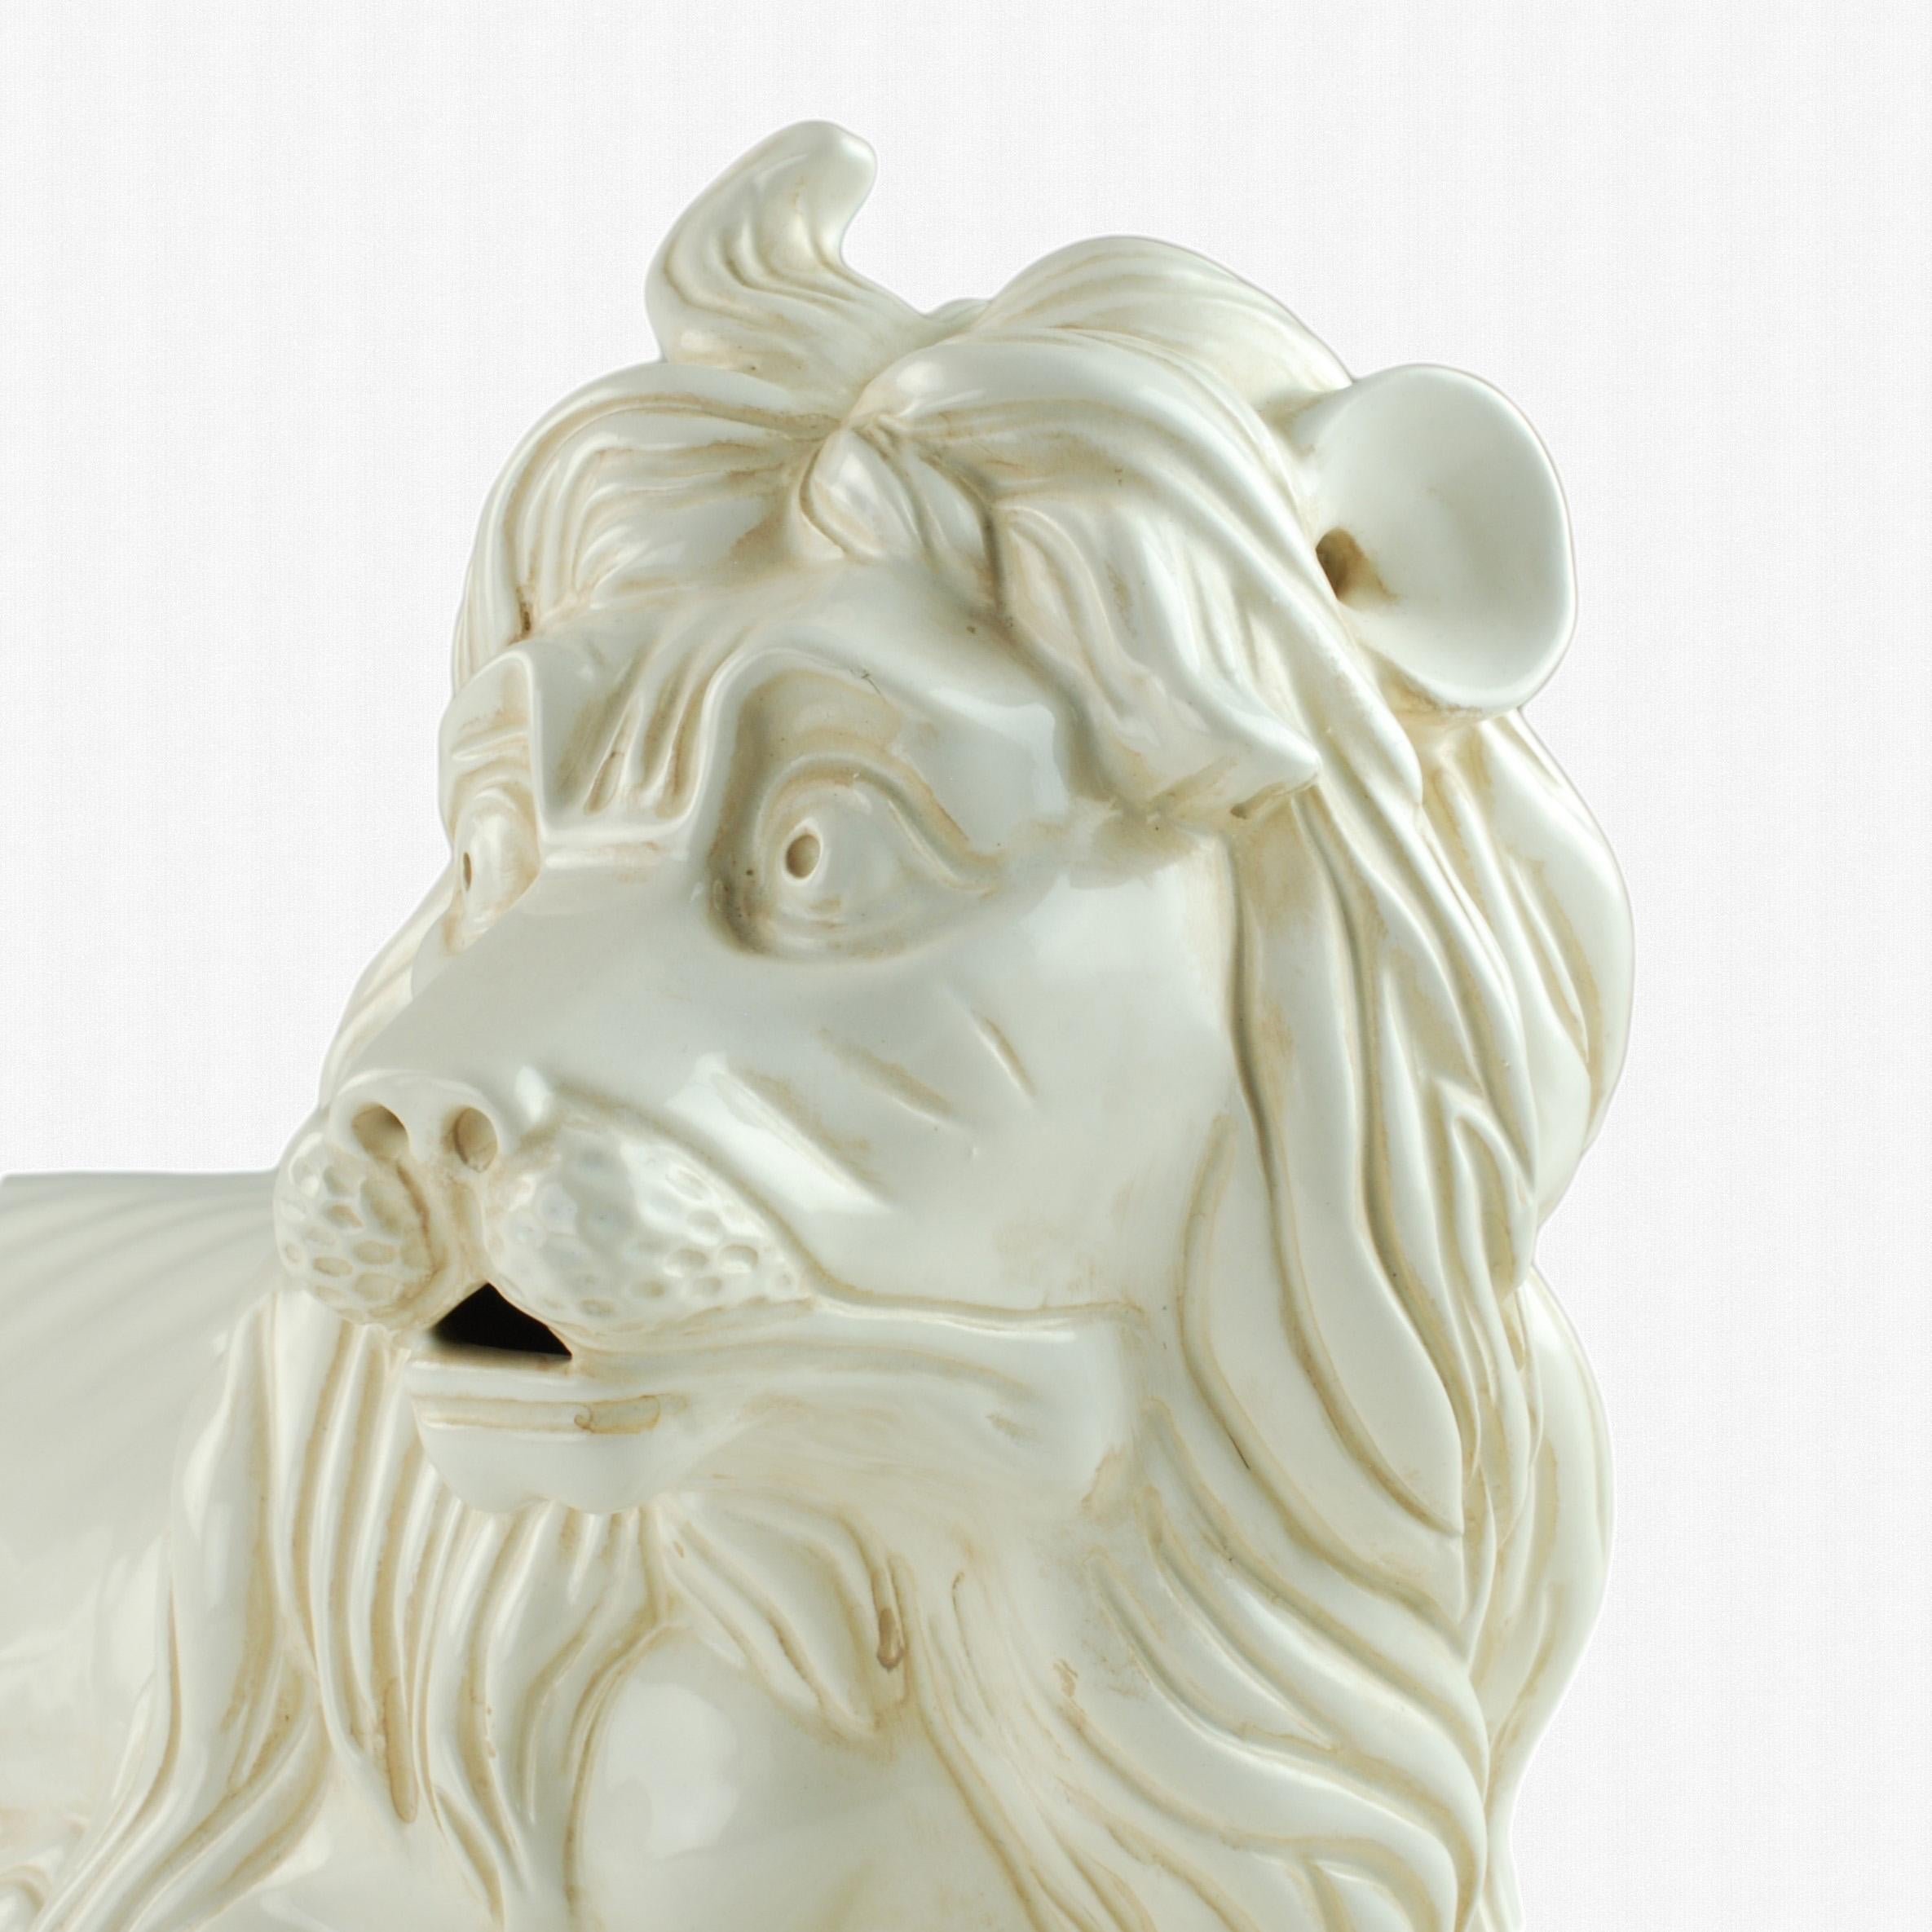 Cette grande figurine de lion en majolique a été réalisée par Porcelain de Cuernavaca pour la société Mottahedeh, connue pour ses reproductions d'antiquités en céramique et ses dessins historiques. Le dessin a été exécuté au début du XVIIIe siècle